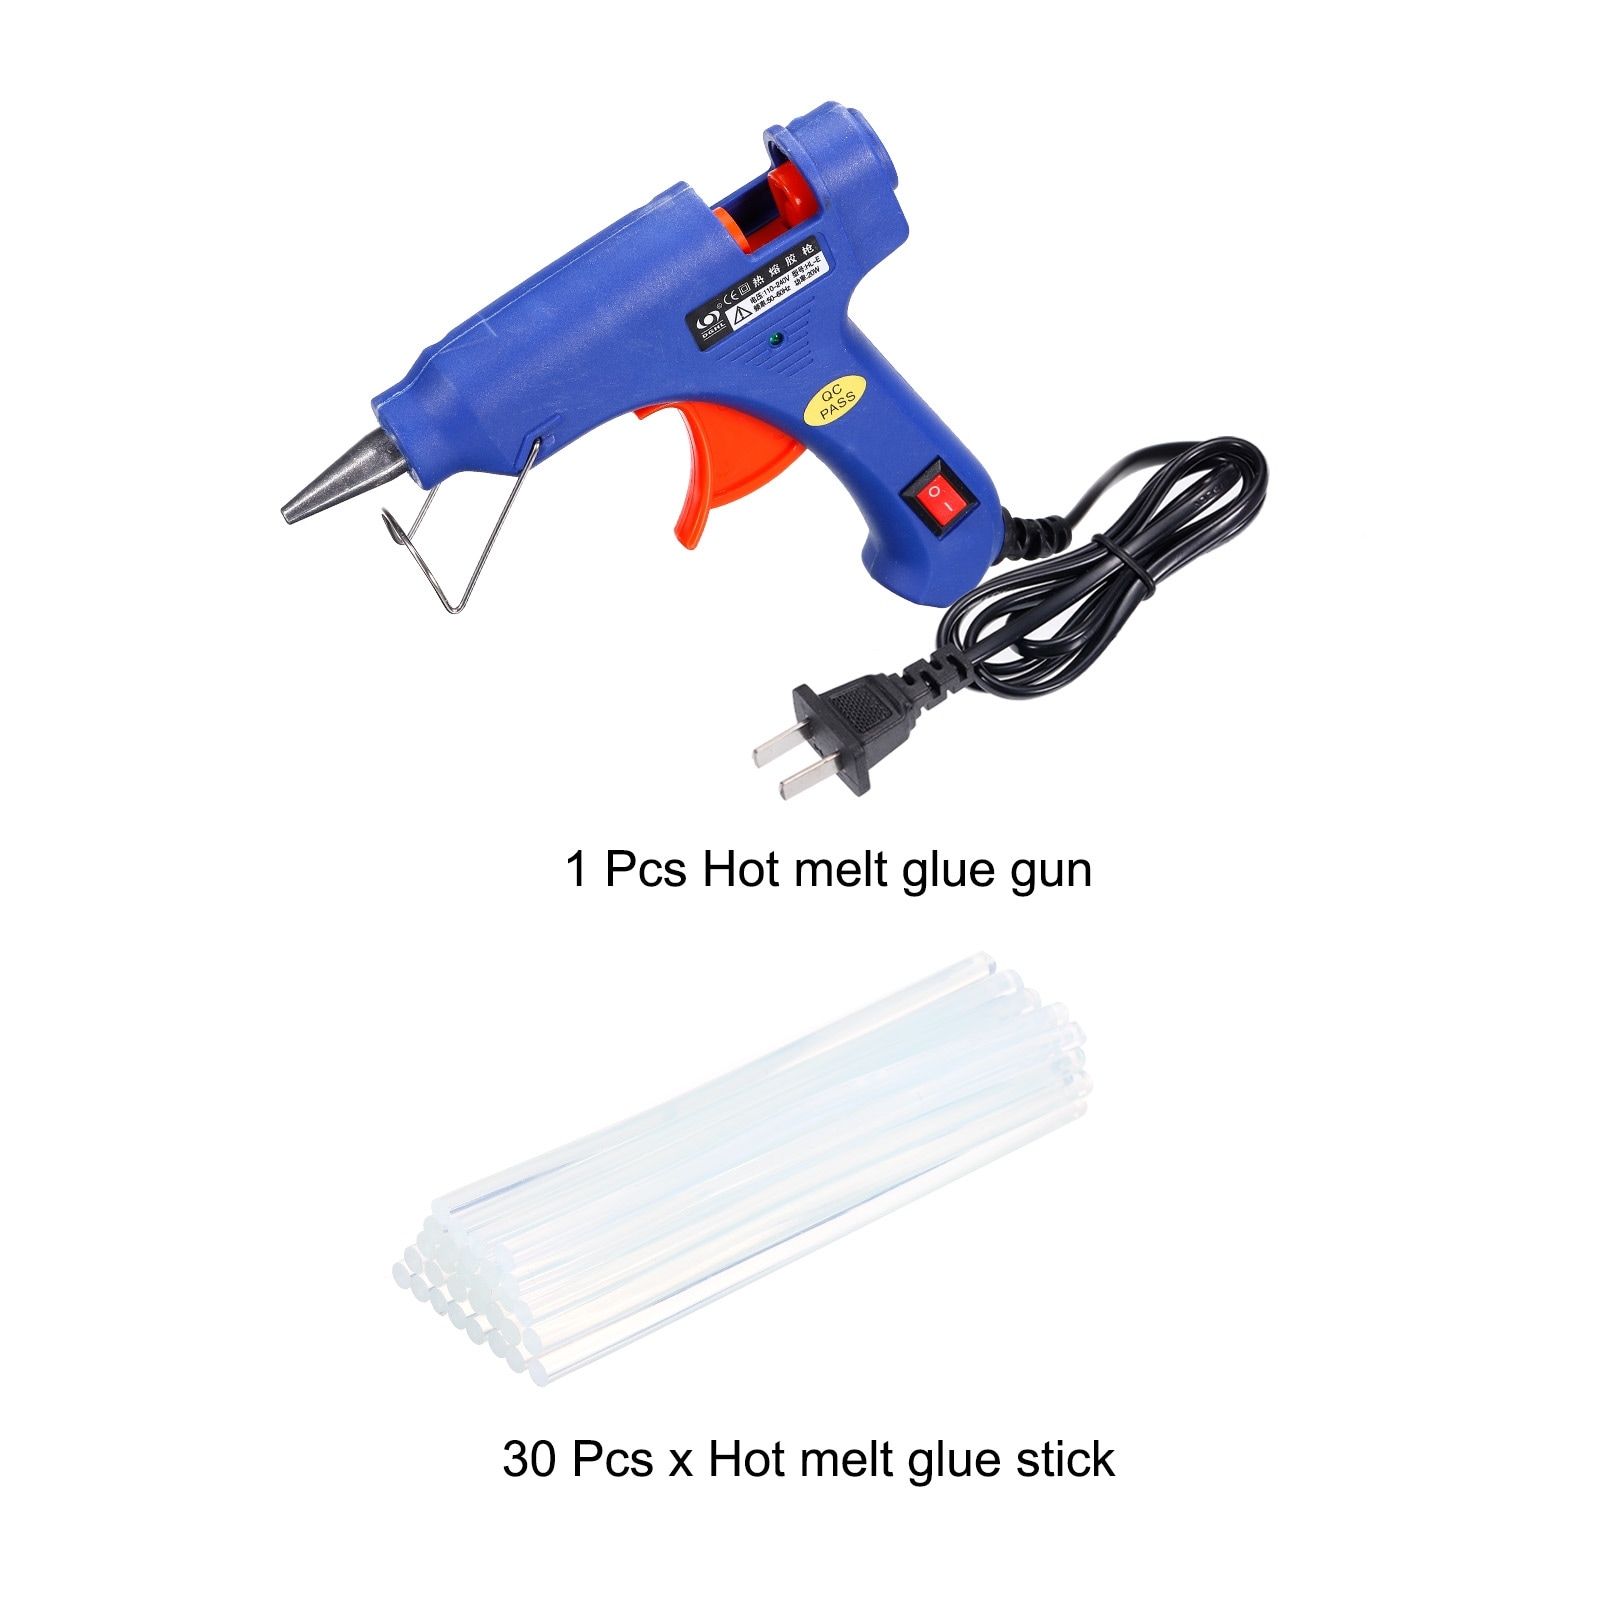  Hot Melt Glue Gun